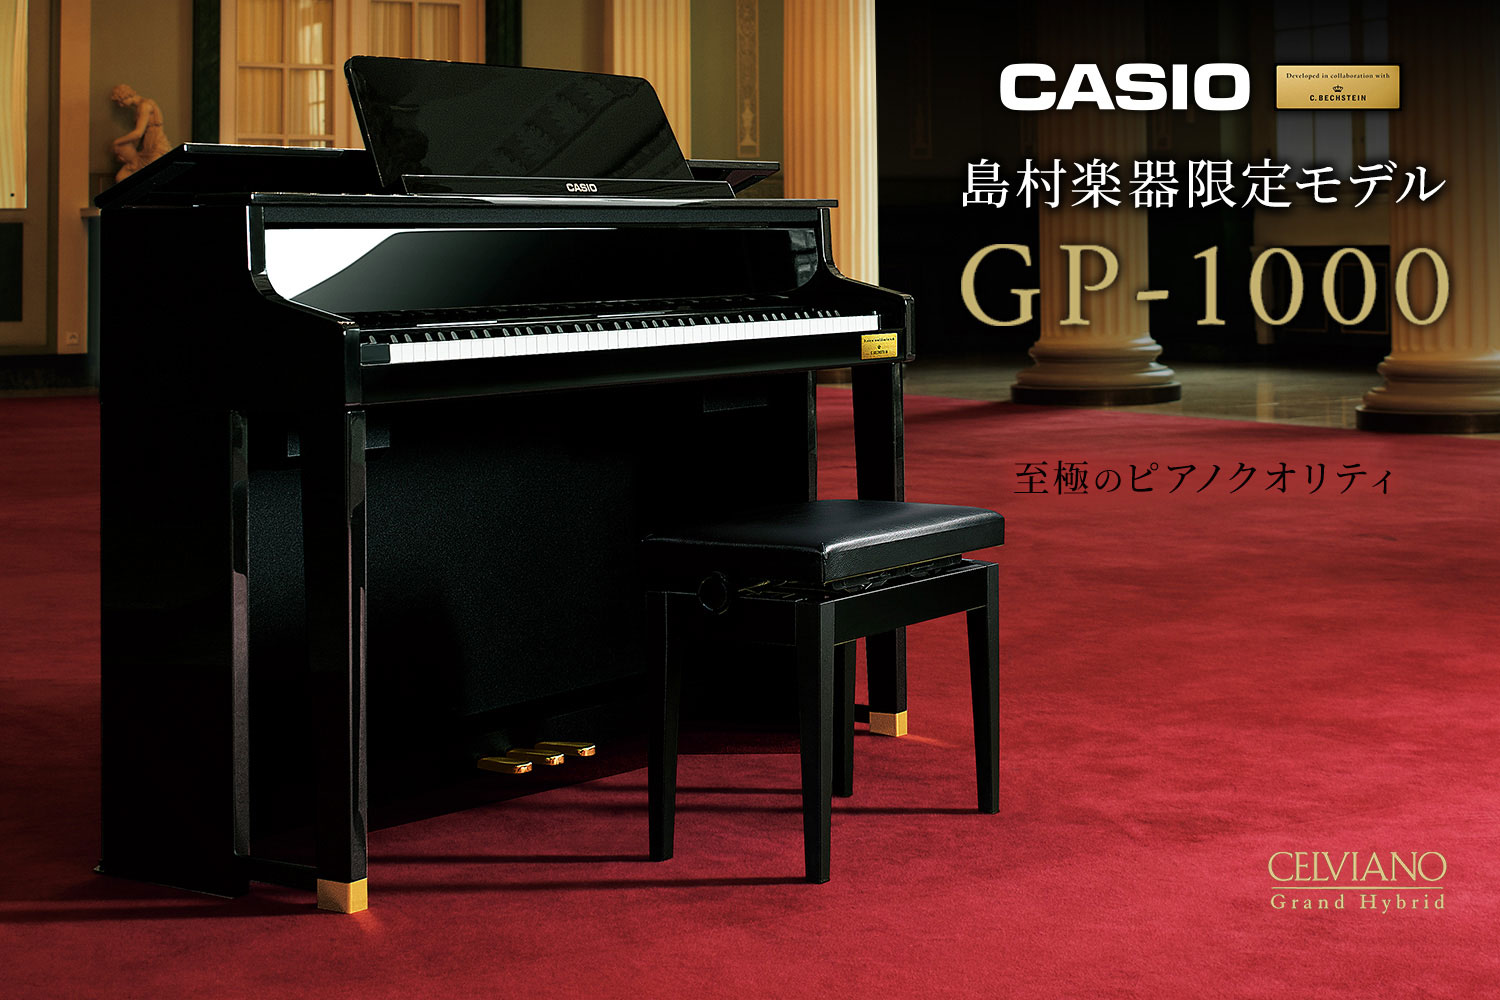 CASIO×C.ベヒシュタイン コラボレーション電子ピアノに島村楽器限定モデル「GP-1000」展示中！